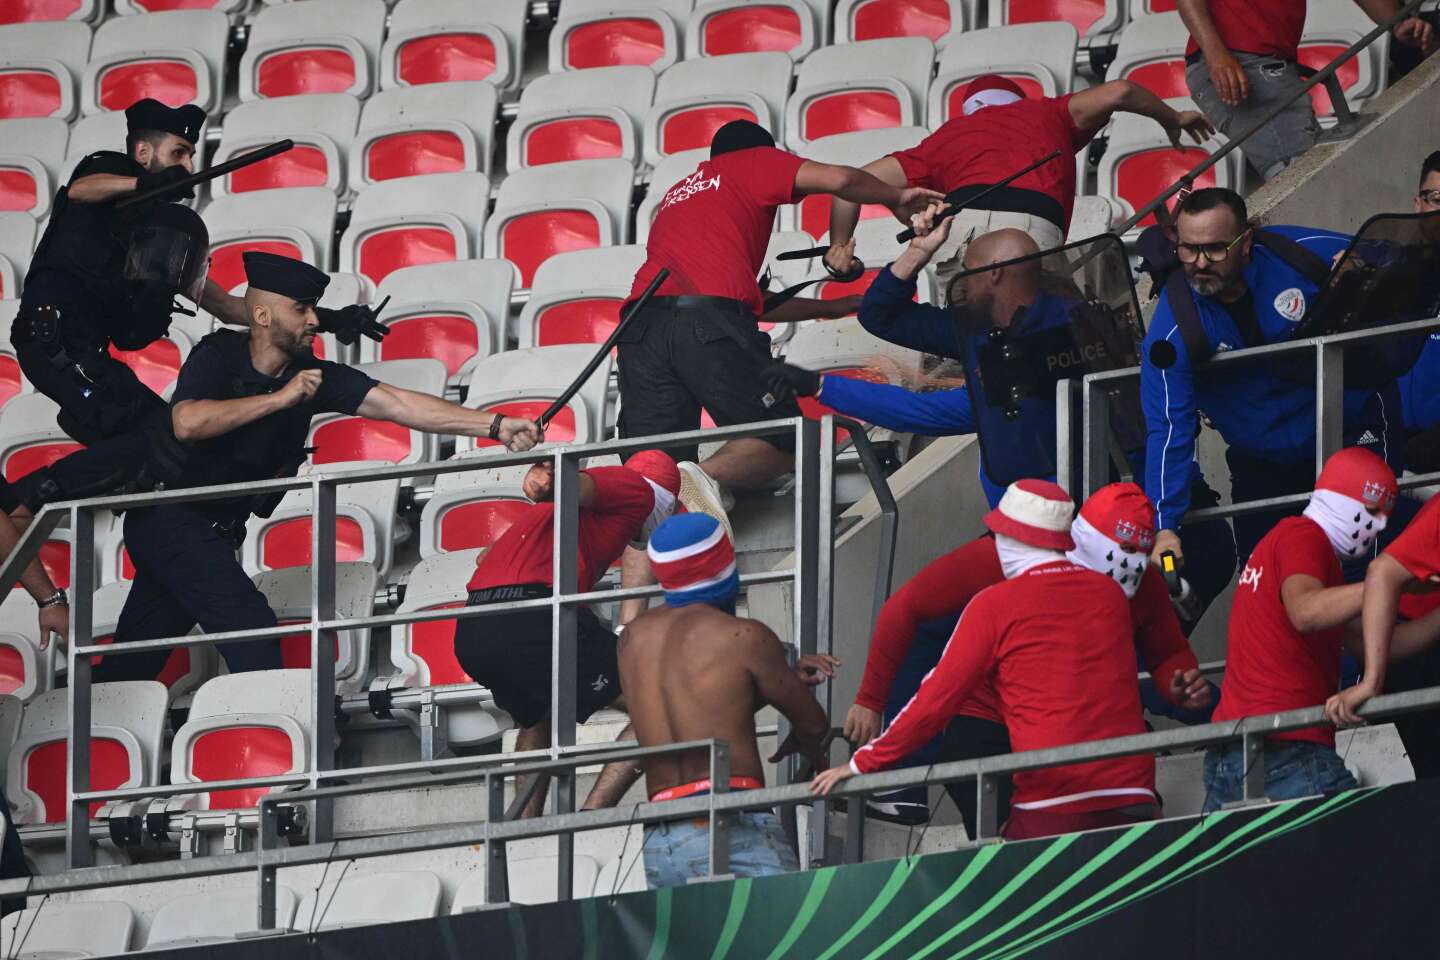 Violences lors du match Nice-Cologne : en Allemagne, une politique de prévention et répression face aux ultras